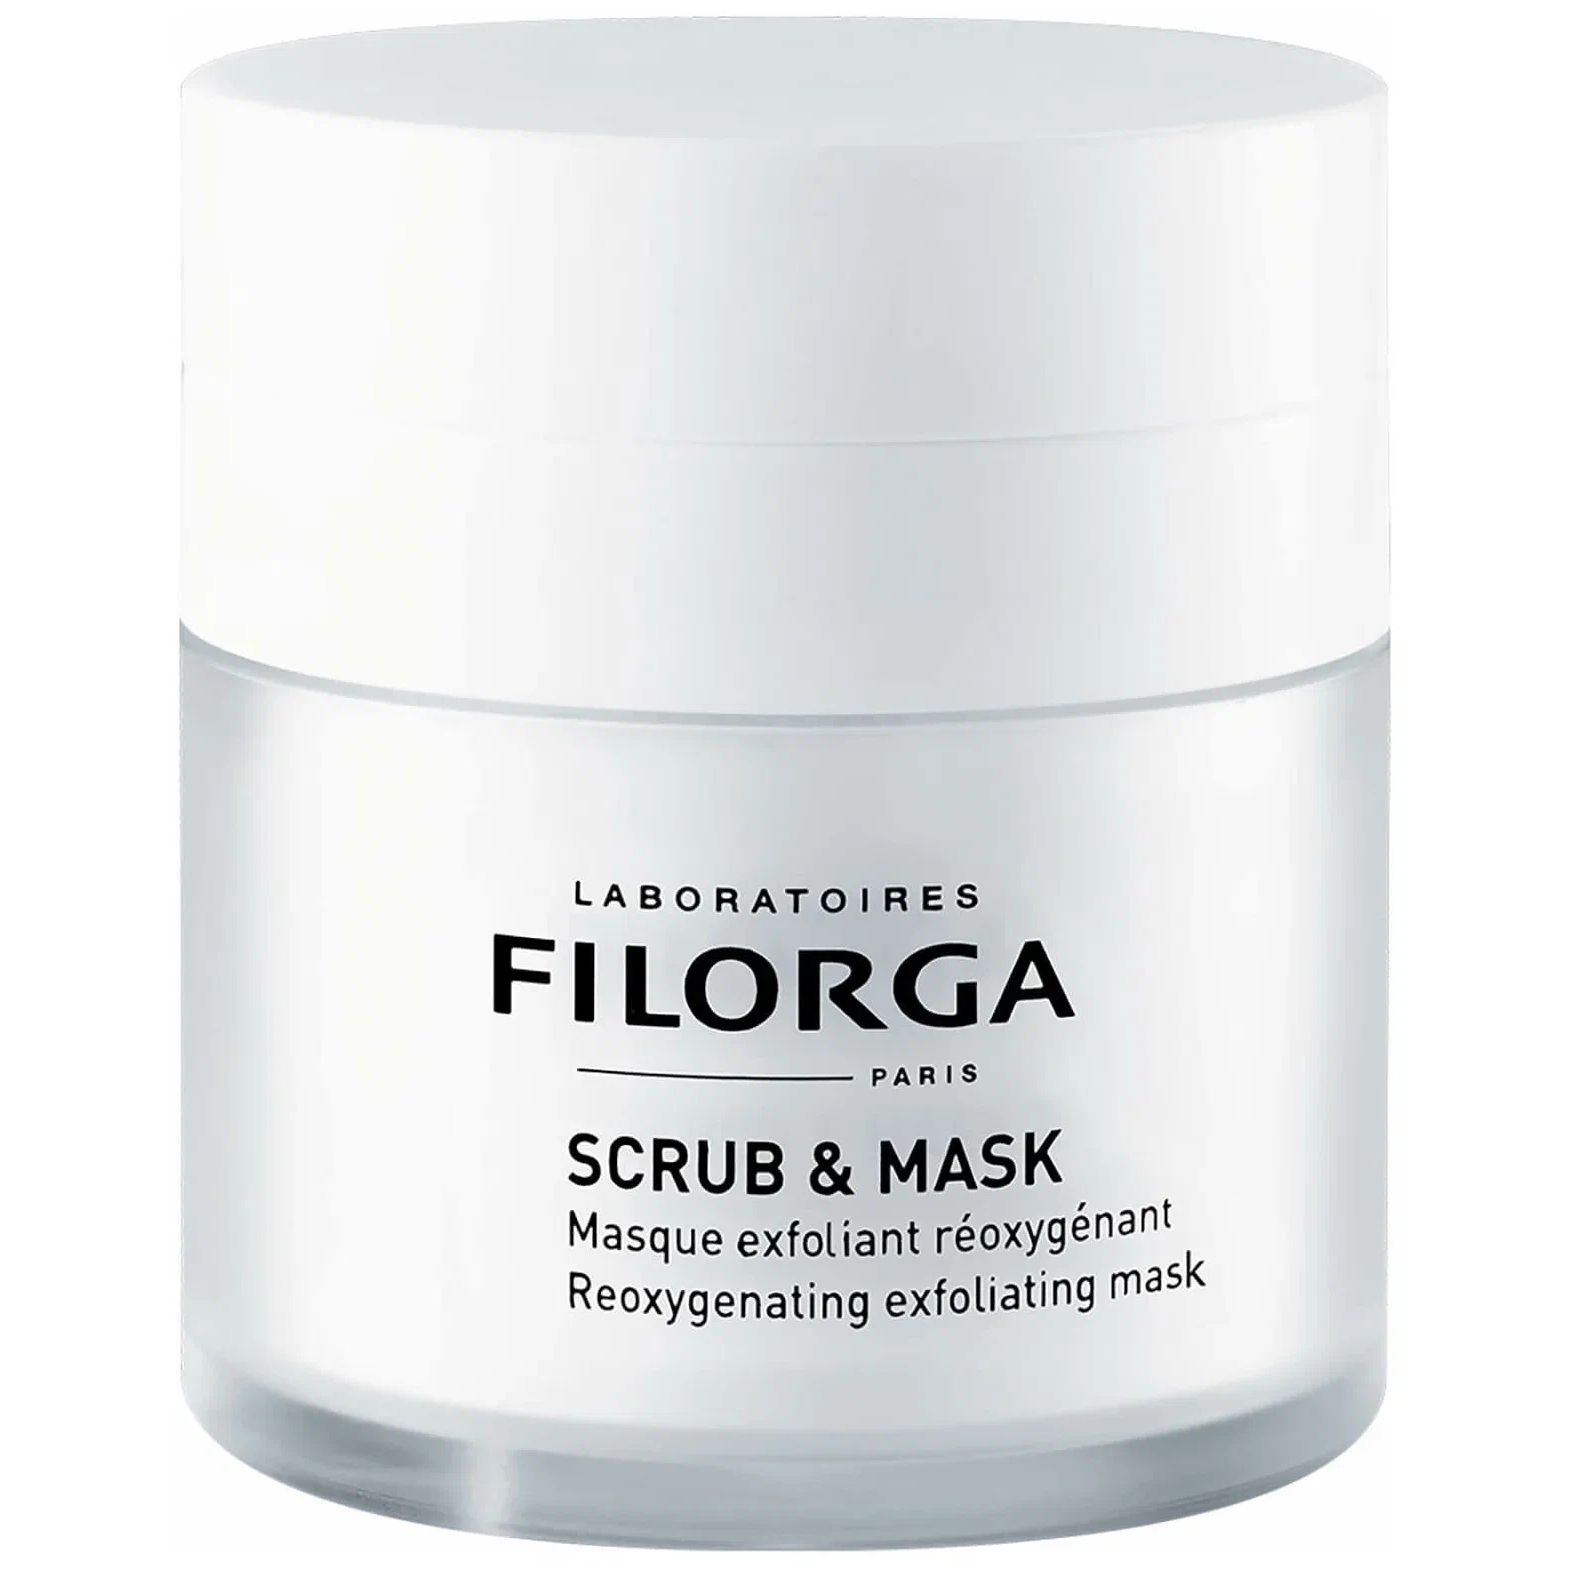 Маска для лица Filorga Scrub And Mask 55 мл filorga флюид для лица с эффектом лифтинга radiance 50 мл filorga lift structure